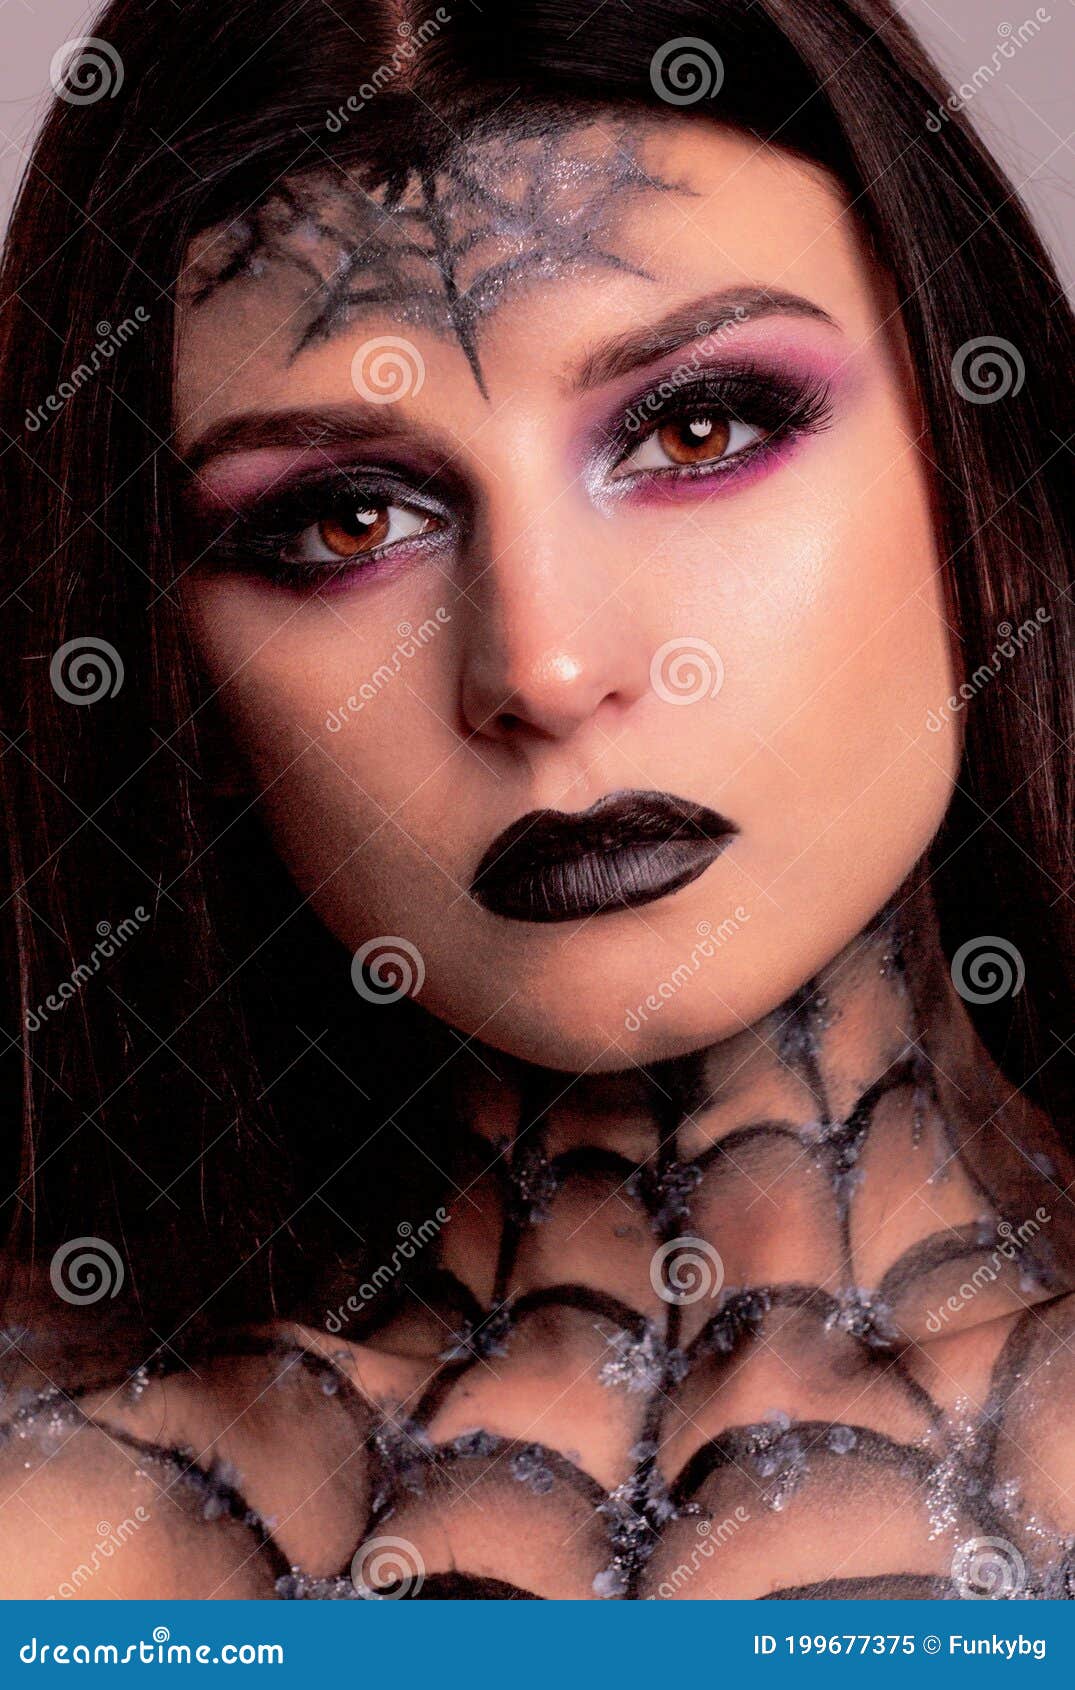 Captura De Pantalla De Cierre De Telaraña De Maquillaje De Halloween Imagen  de archivo - Imagen de cosmético, haga: 199677375